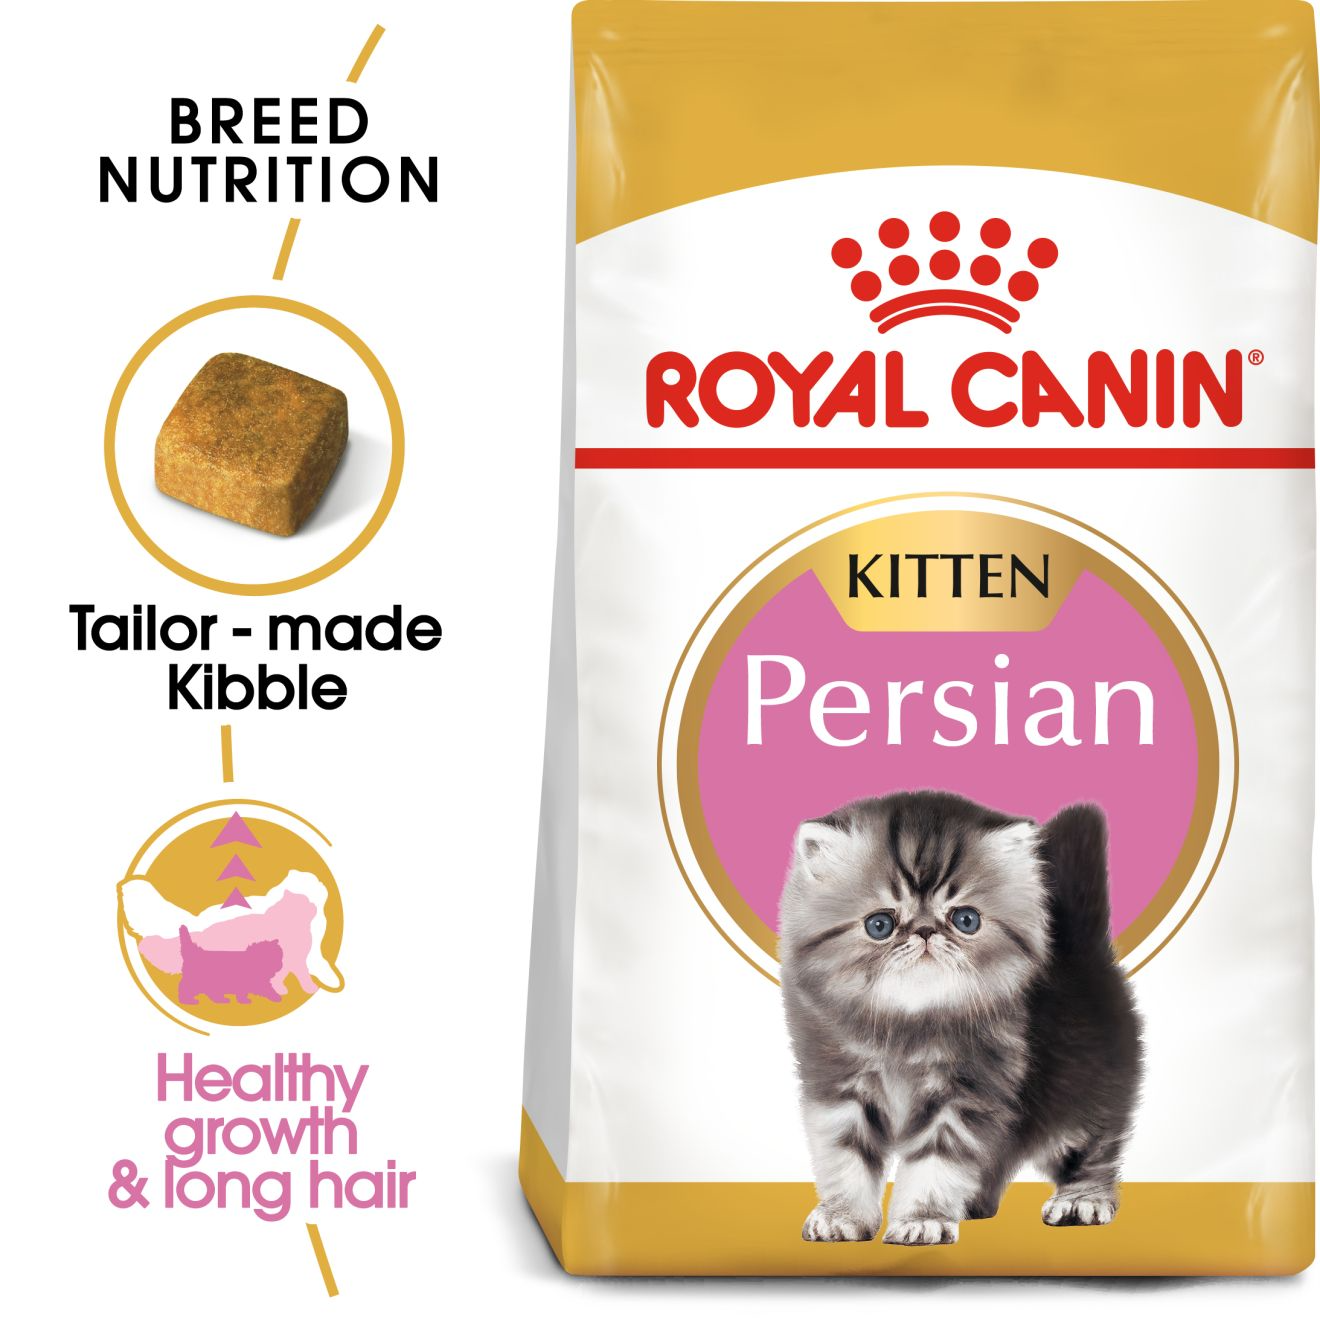 Royal Canin - Persian Kitten Dry Cat Food